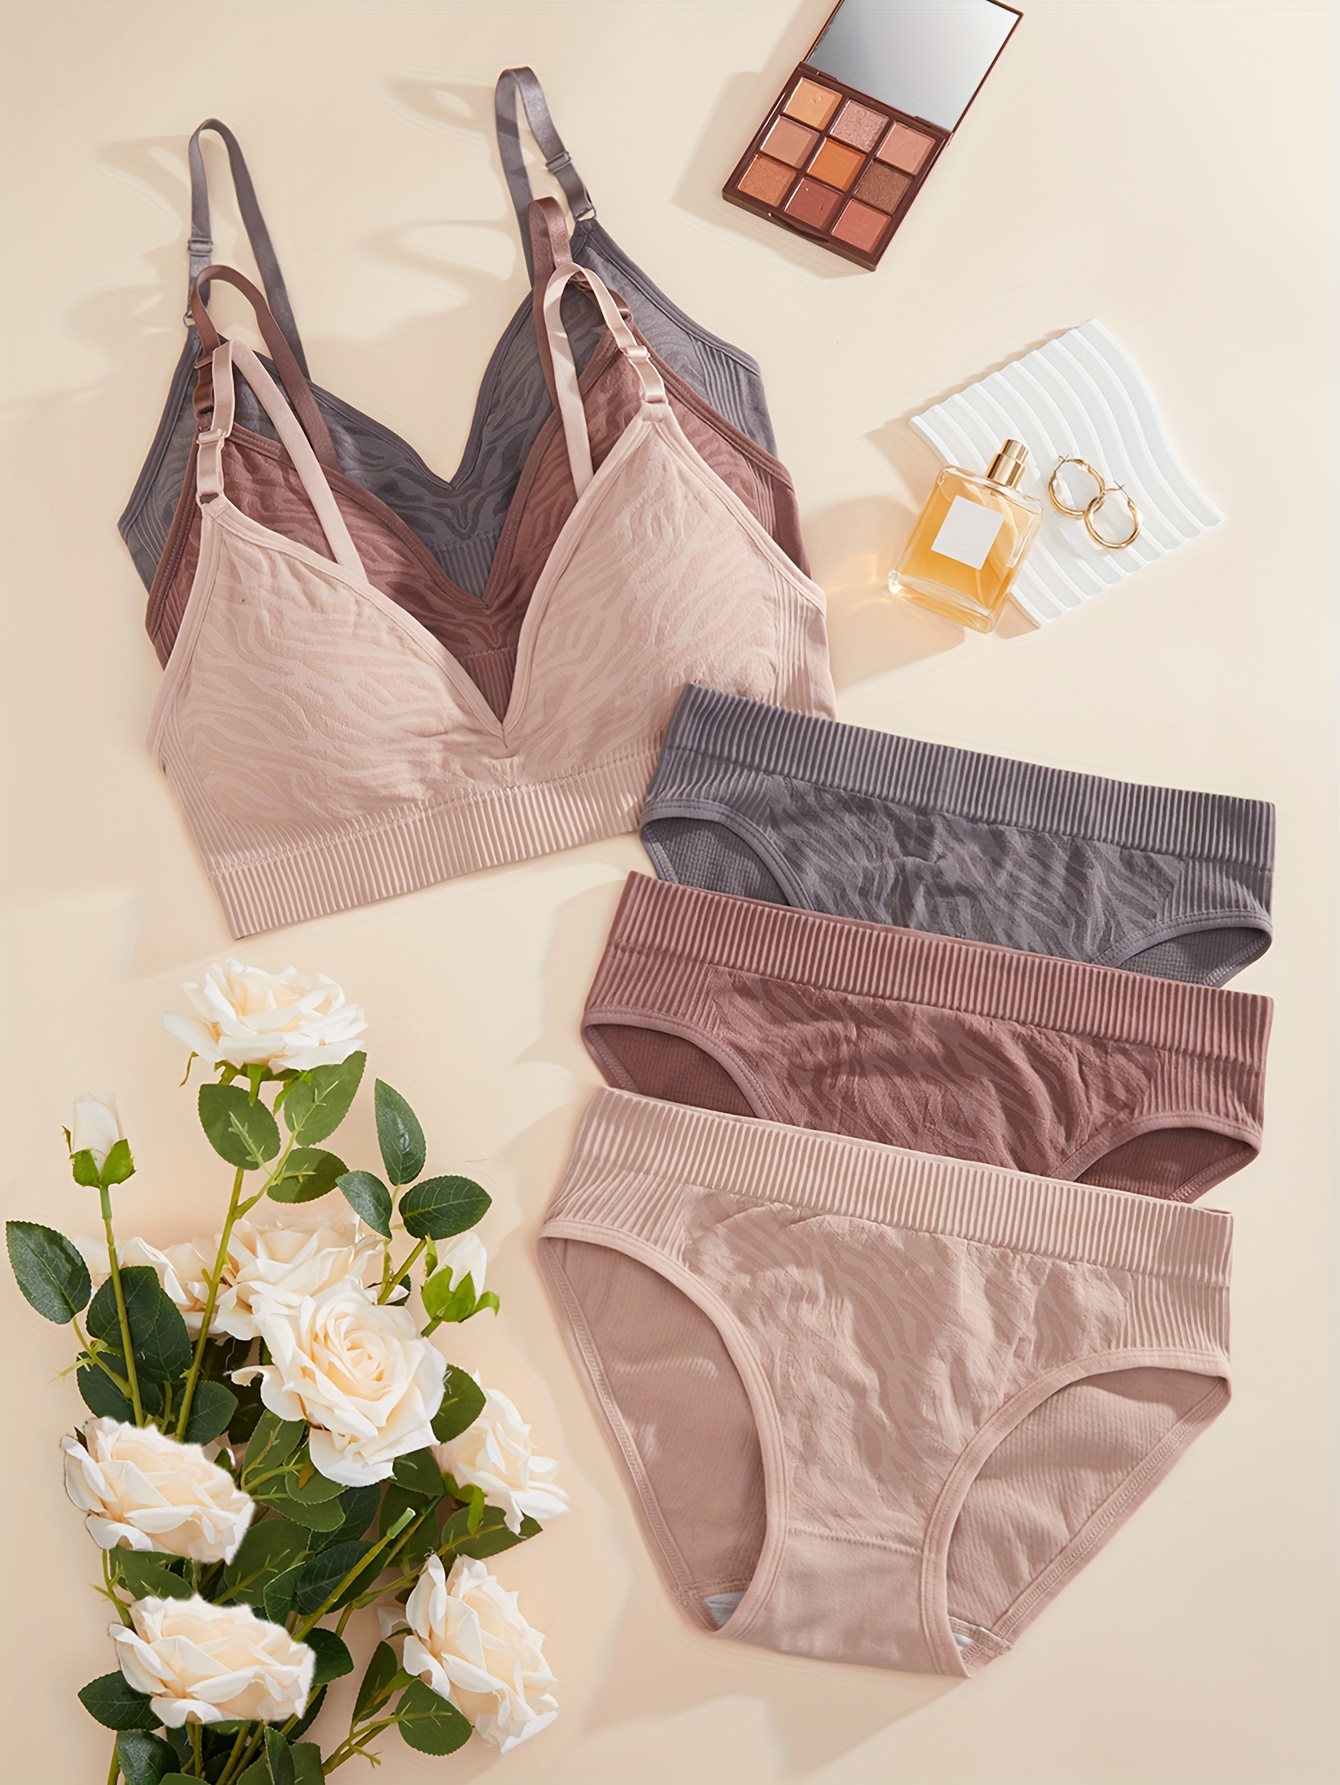 3 Sets Contrast Lace Bra & Panties, Letter Trim Bra & Cut Out Panties  Lingerie Set, Women's Lingerie & Underwear